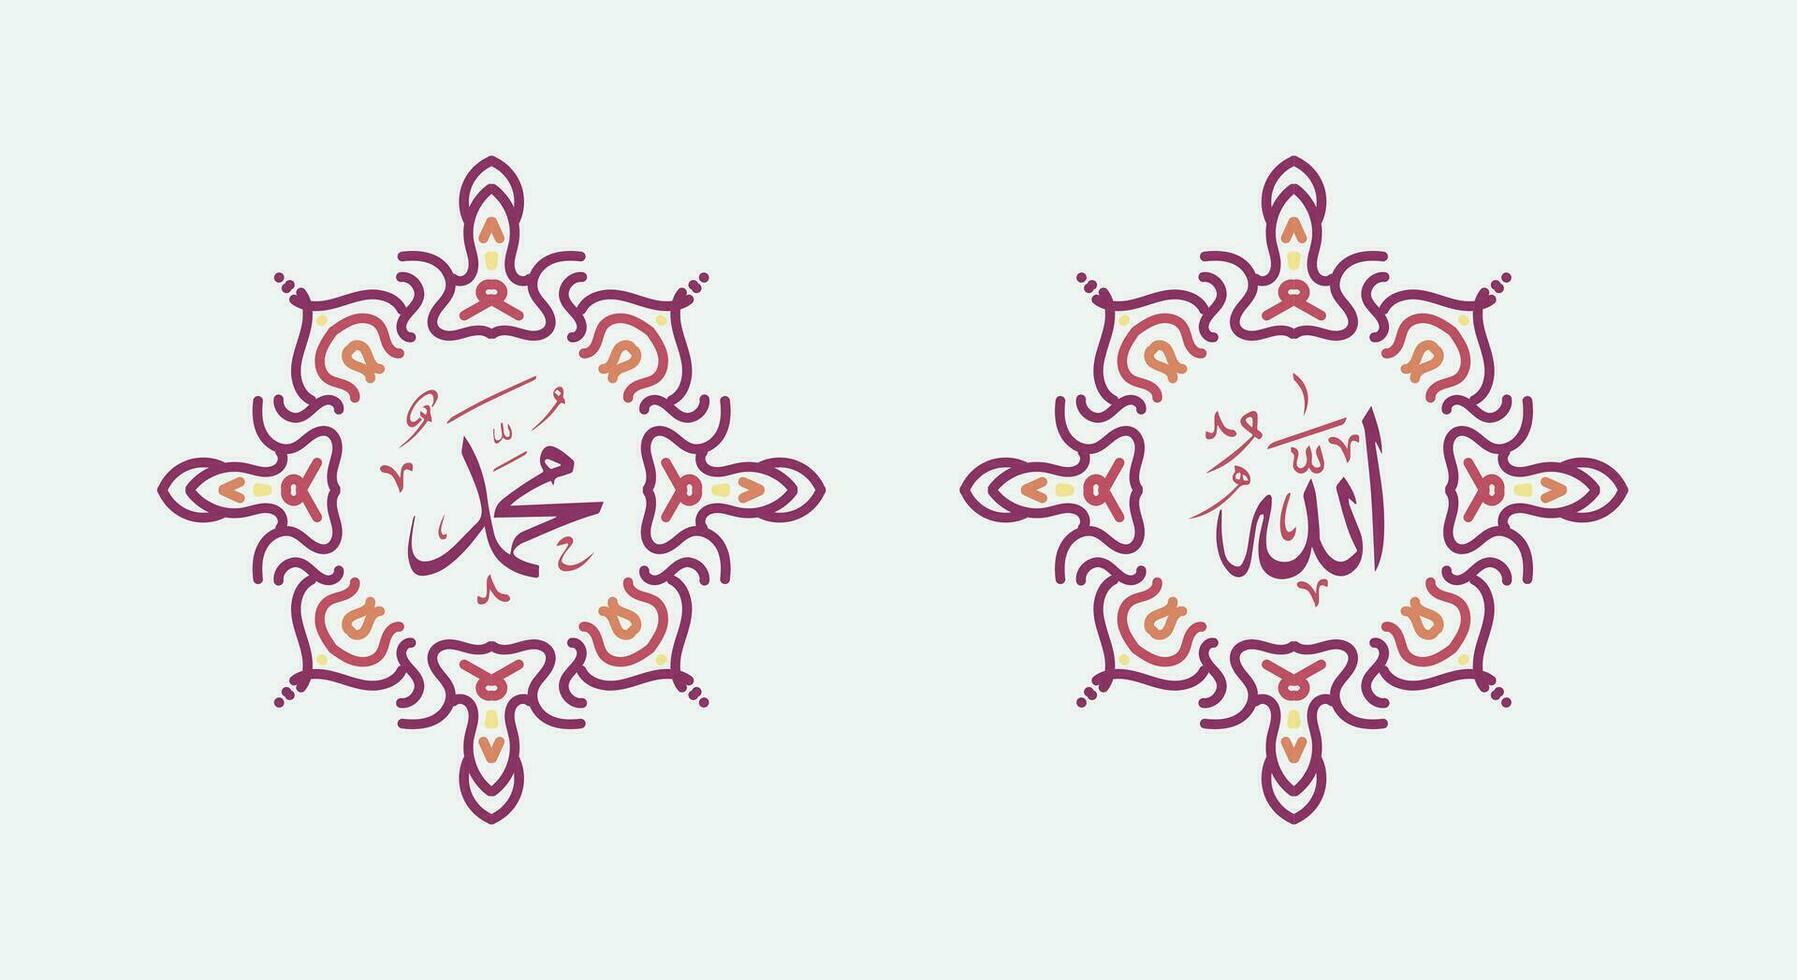 allah muhammad namn på allah muhammad, allah muhammad arabisk islamisk kalligrafikonst, med traditionell ram och retrofärg vektor